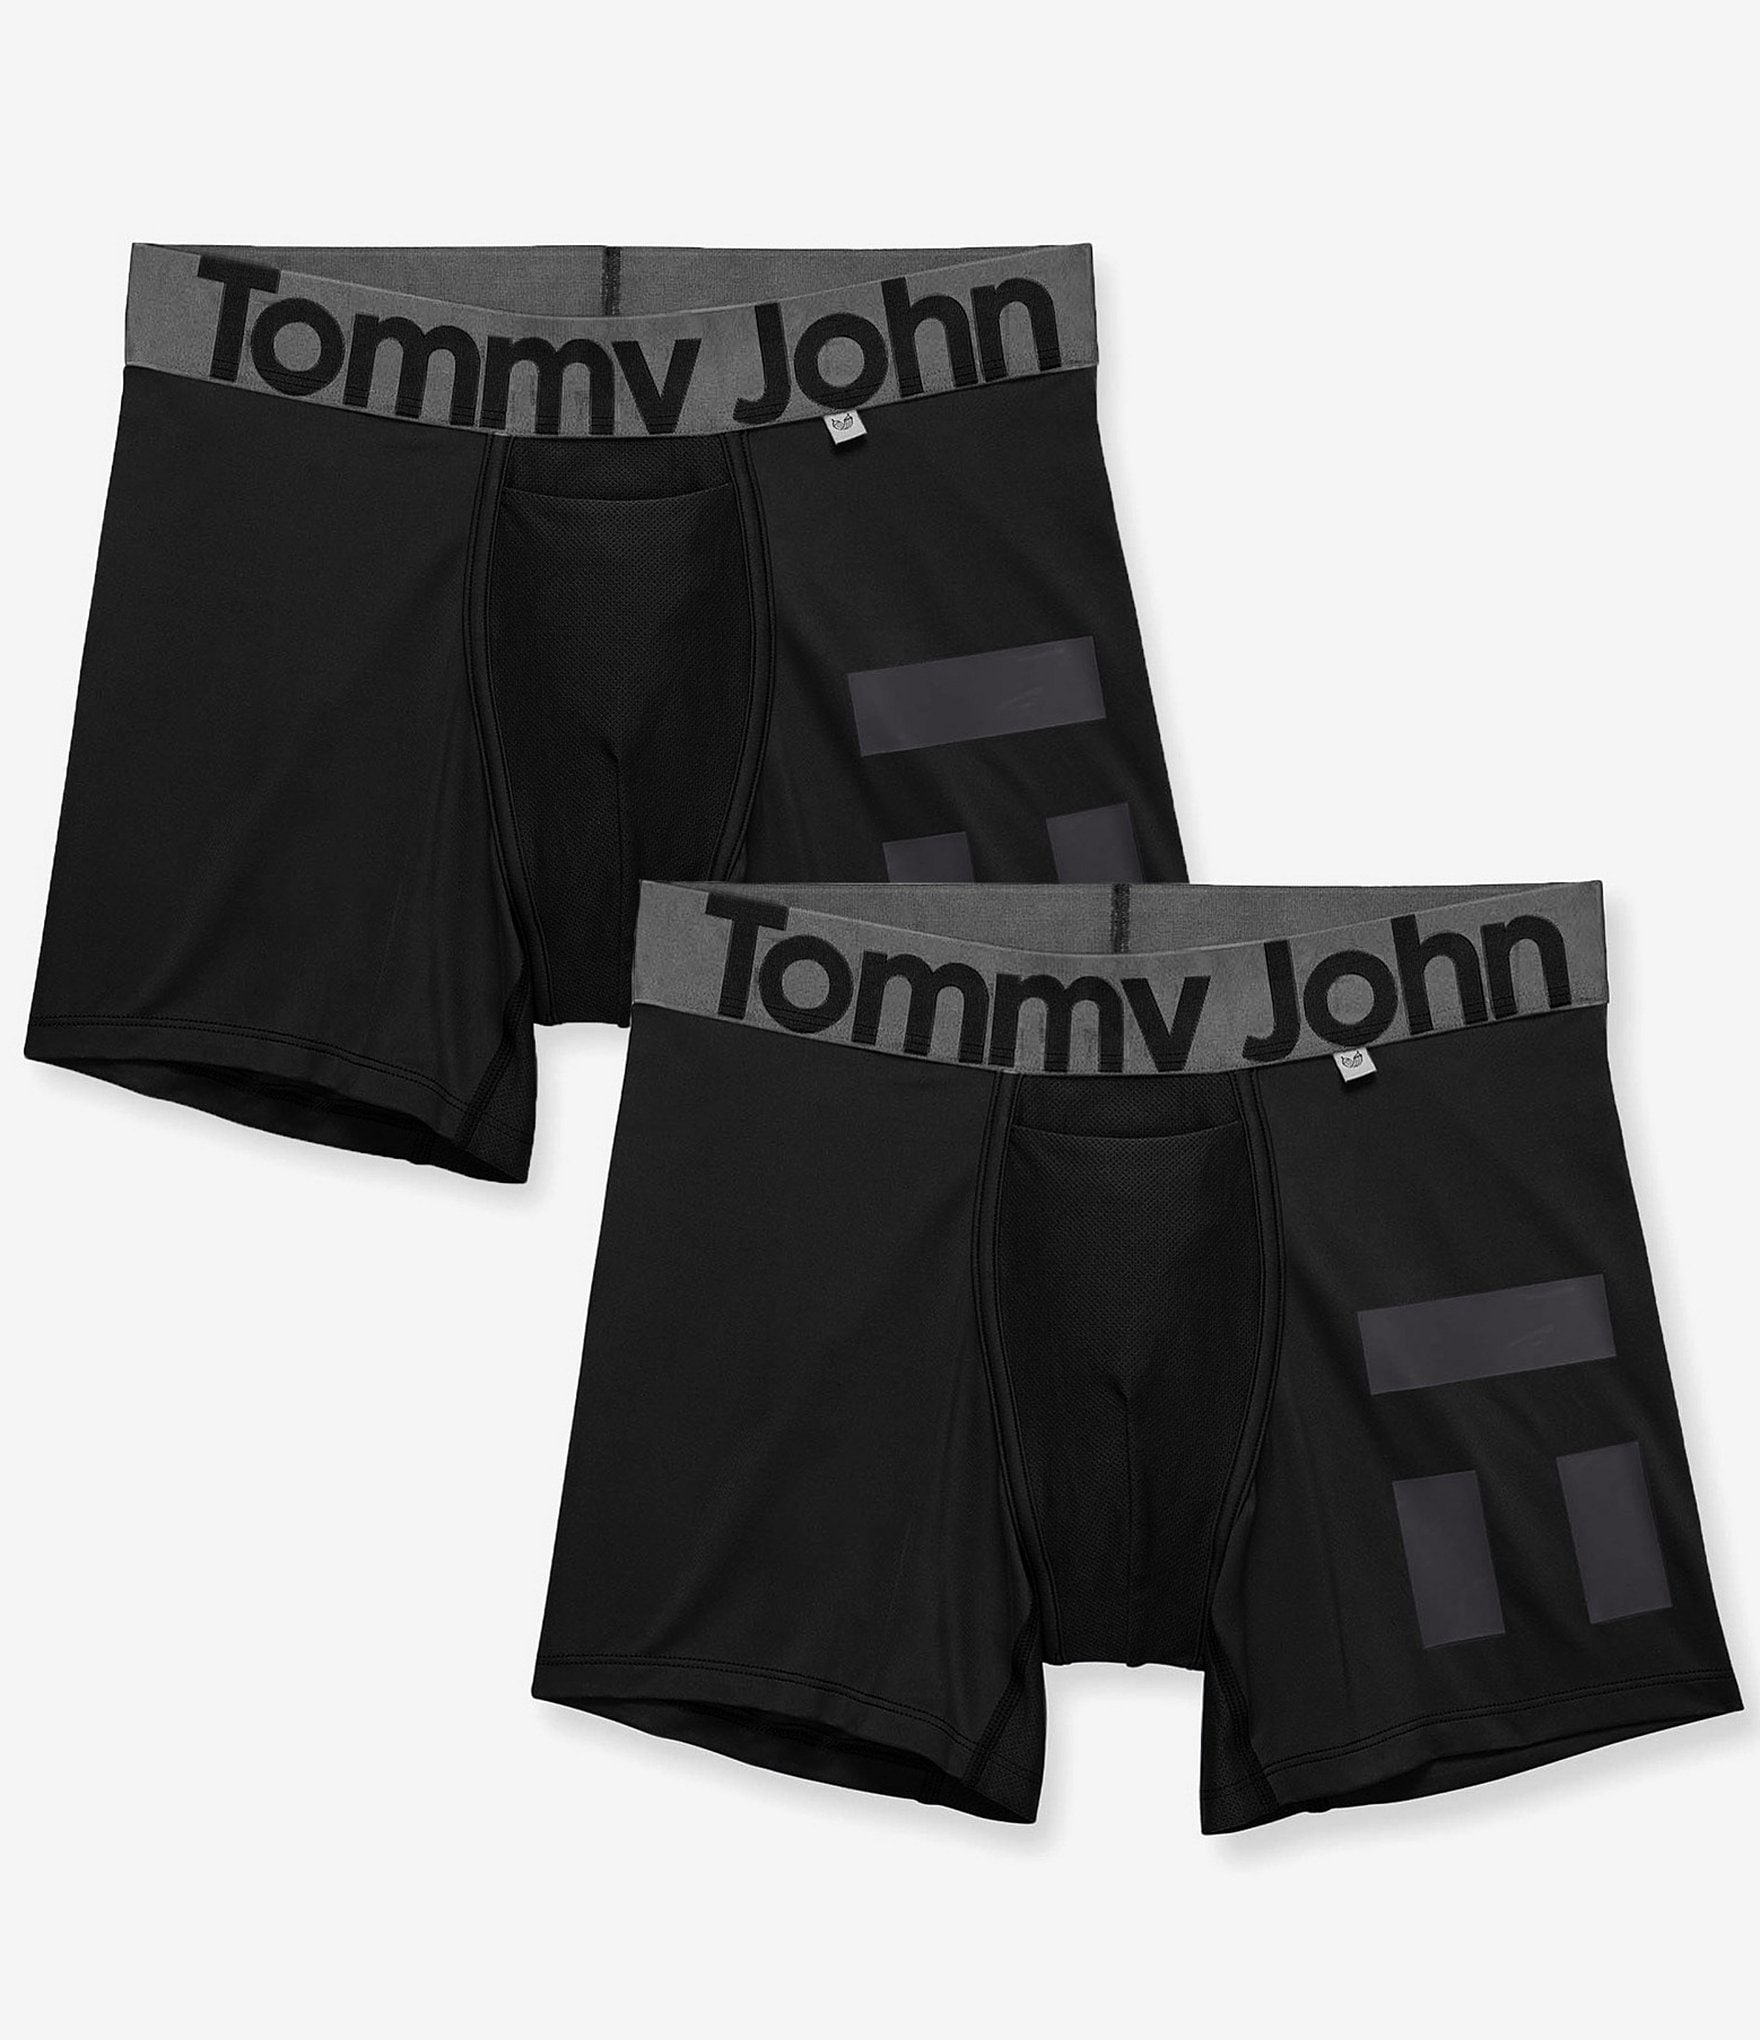 Tommy John Men's Cotton Basics Underwear Sz S Long Boxer Solid